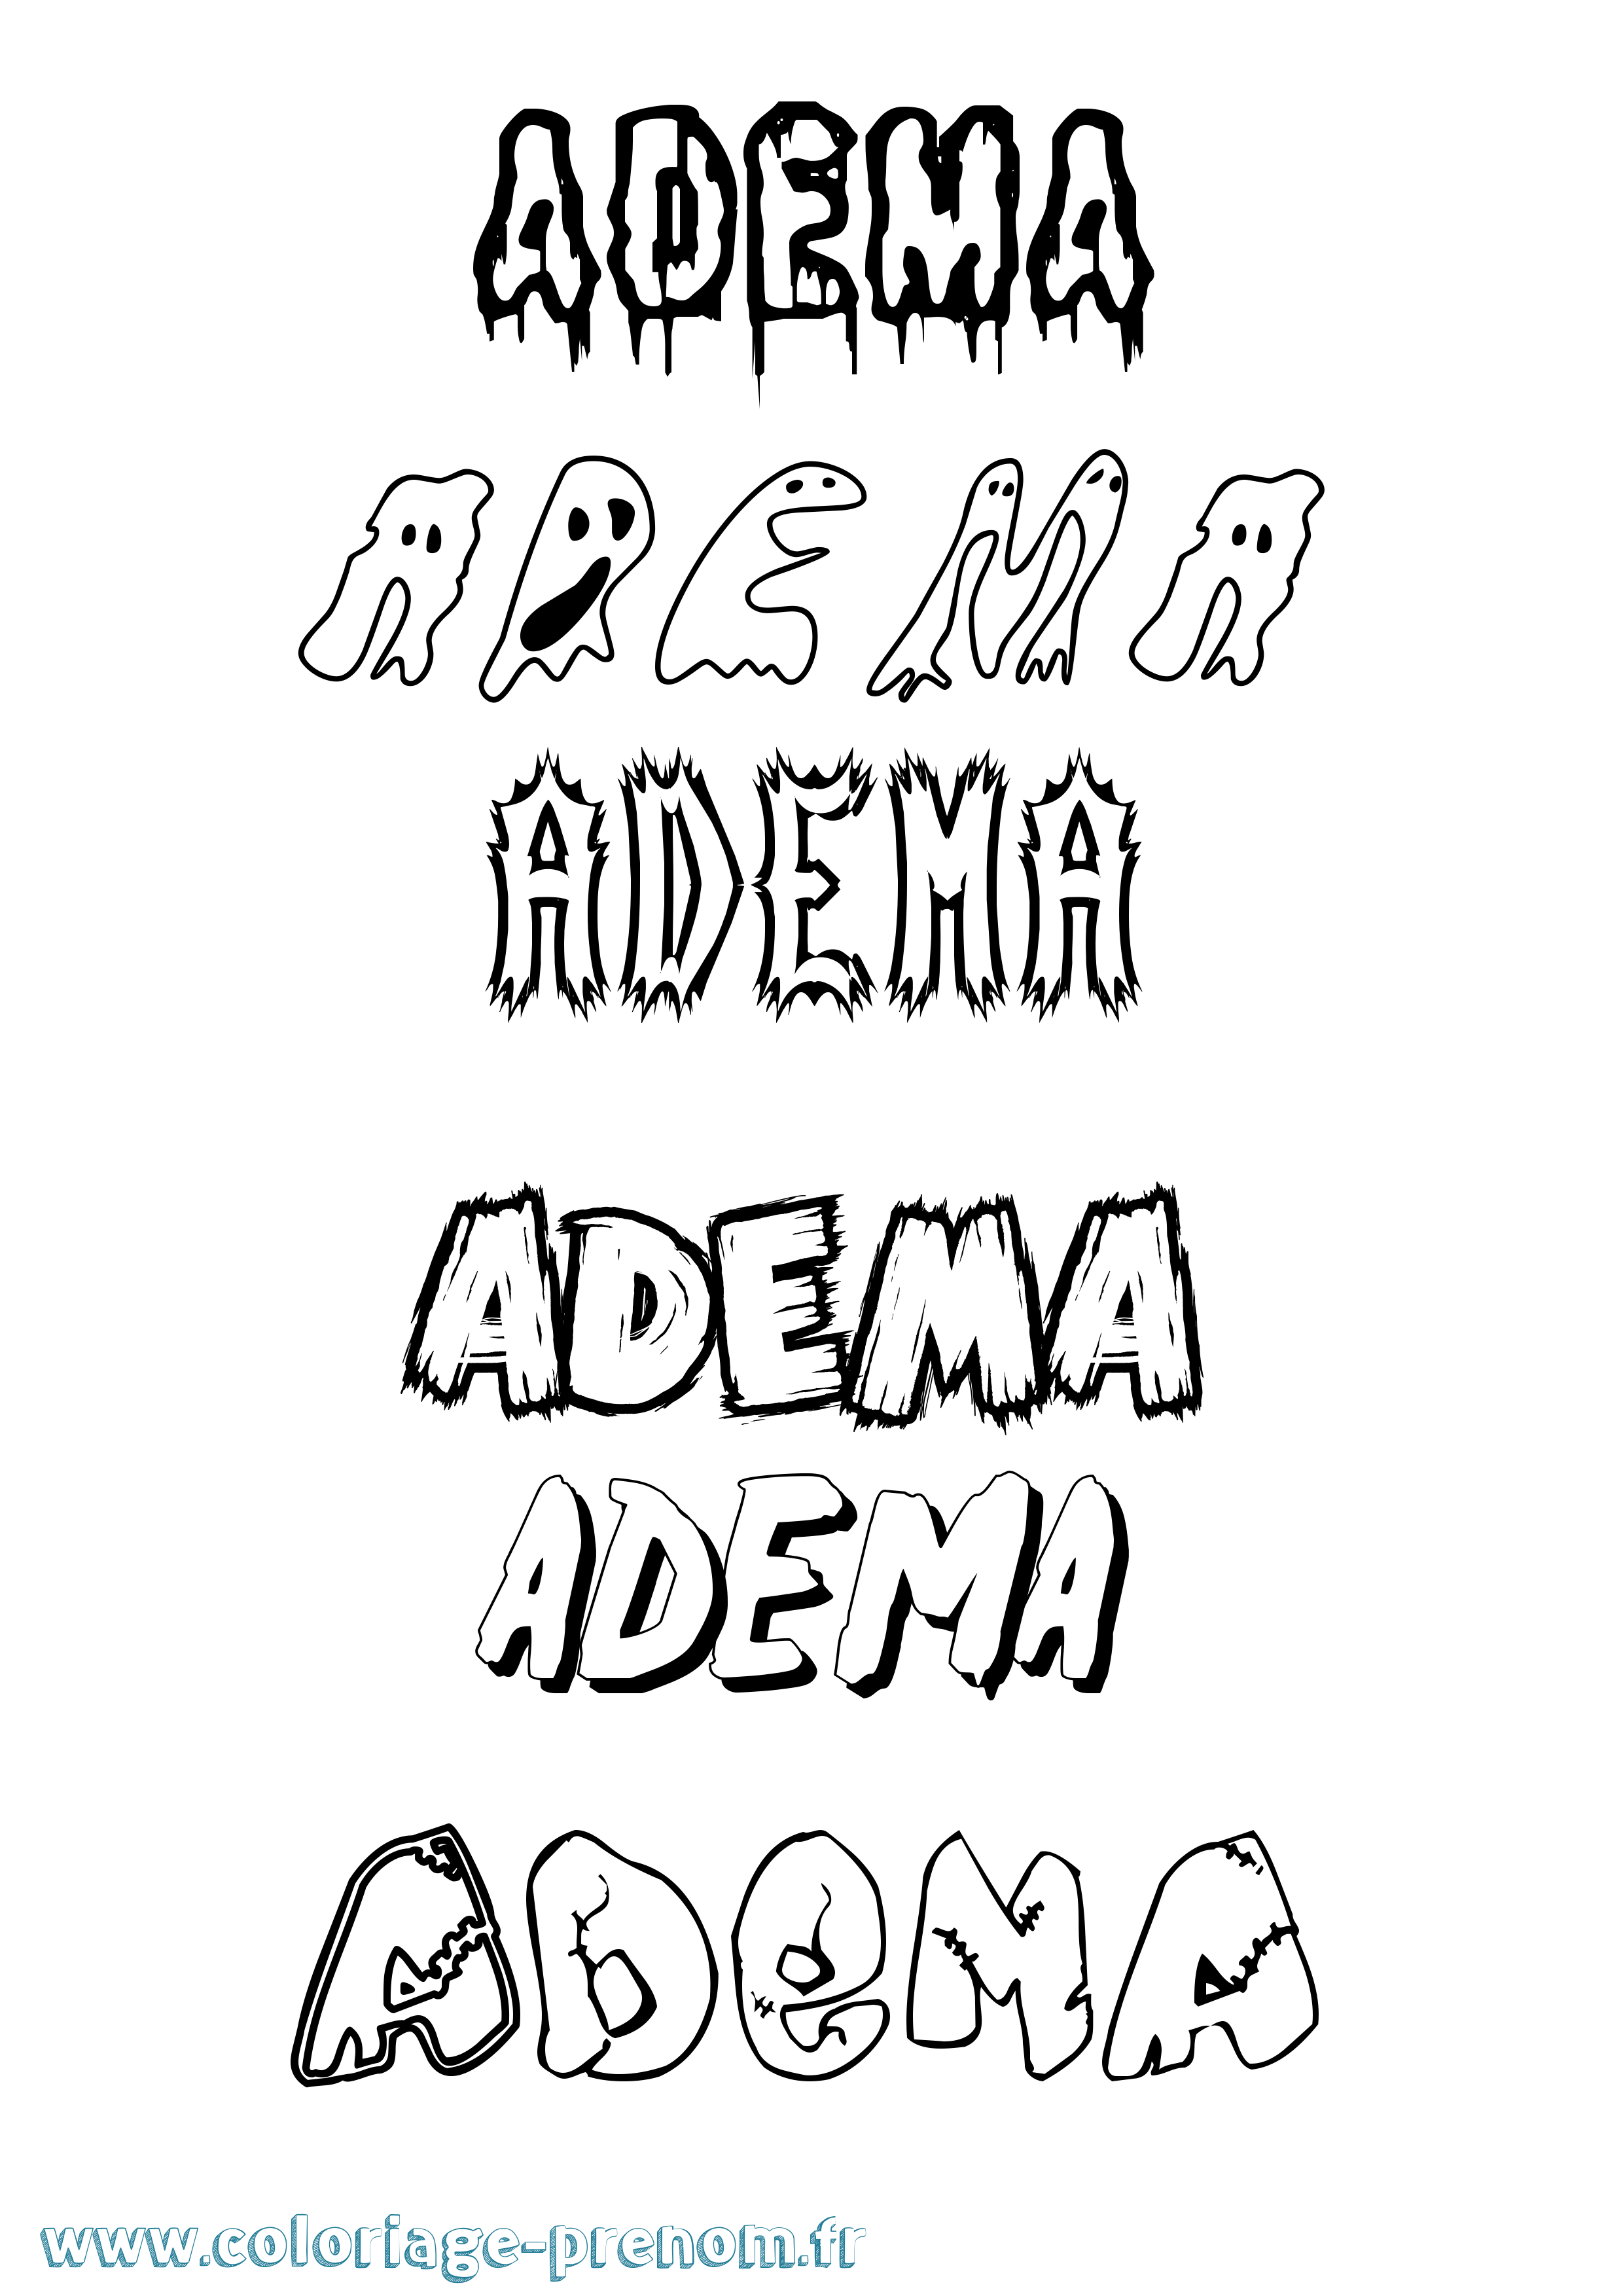 Coloriage prénom Adema Frisson